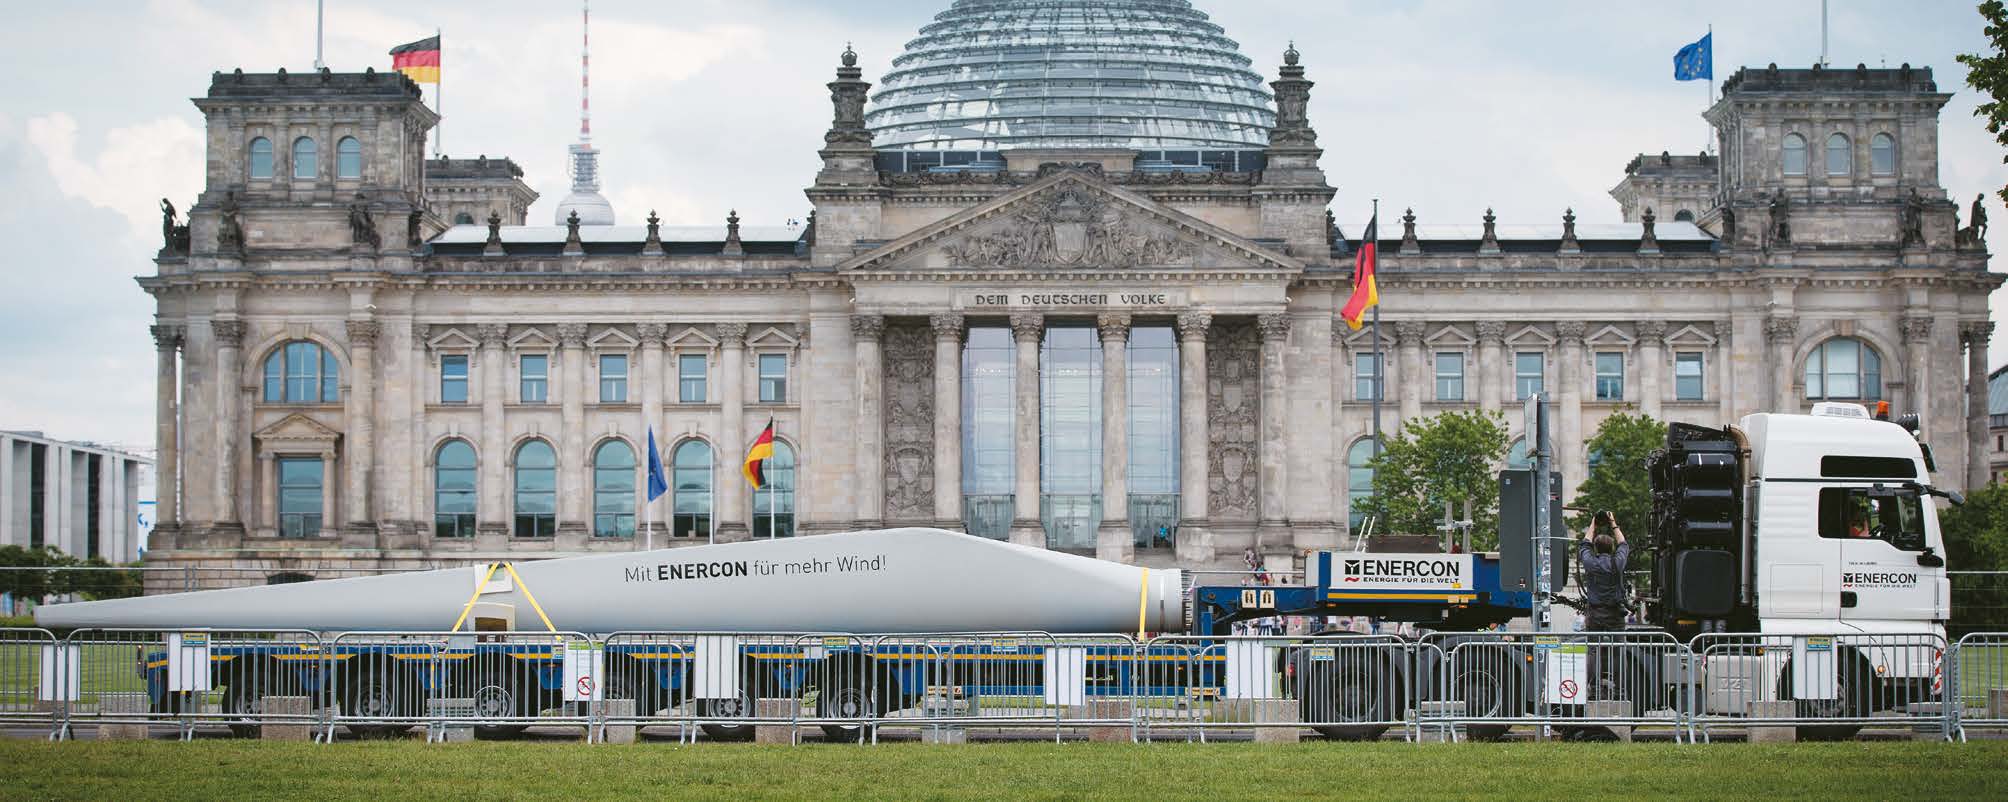 POLITIK_ Ausschreibungen legen der Windenergie Fußfesseln an Wenn auch der Bundestag noch nicht in erster Lesung über die Ausgestaltung des EEG 2016 befunden hat, ist dennoch bereits in weiten Teilen